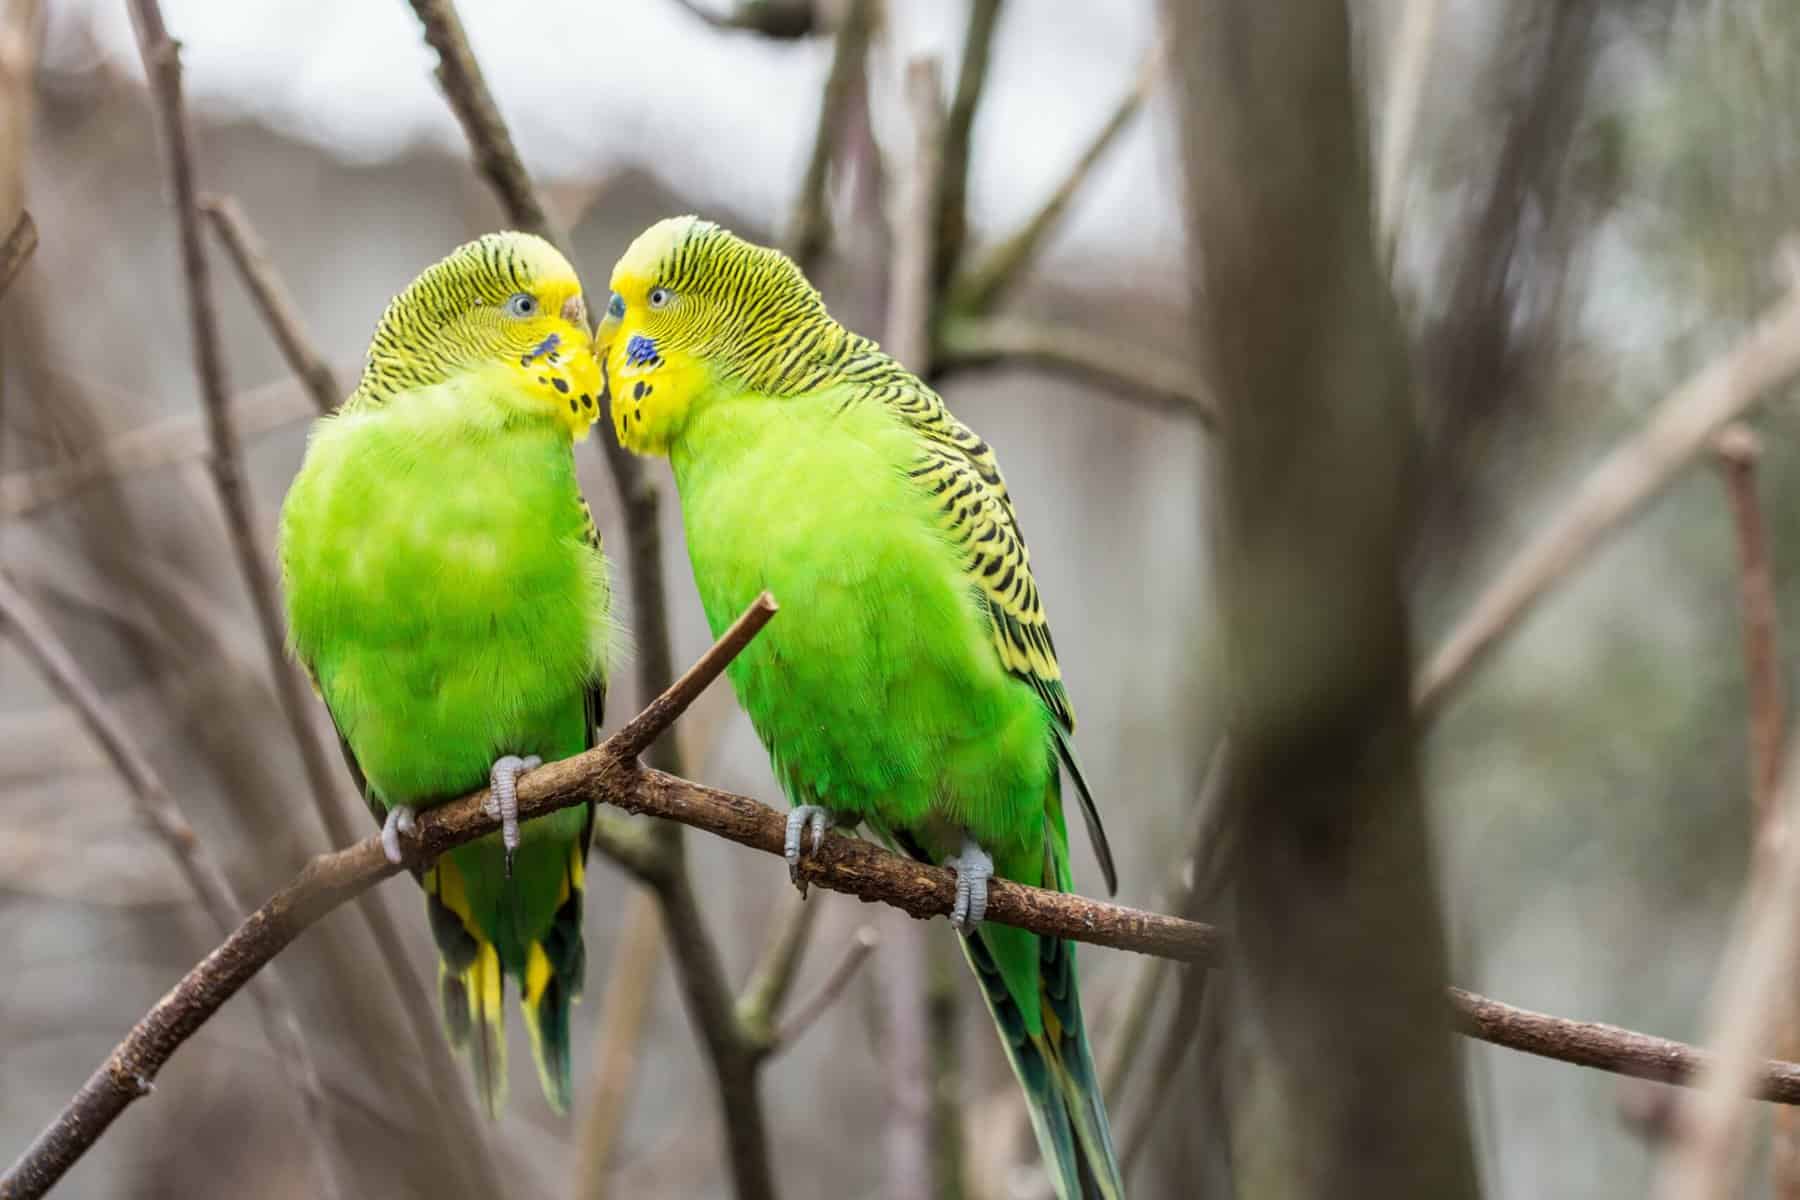 Do Lovebirds Bite Hard? How To Train Your Lovebird Not To Bite?